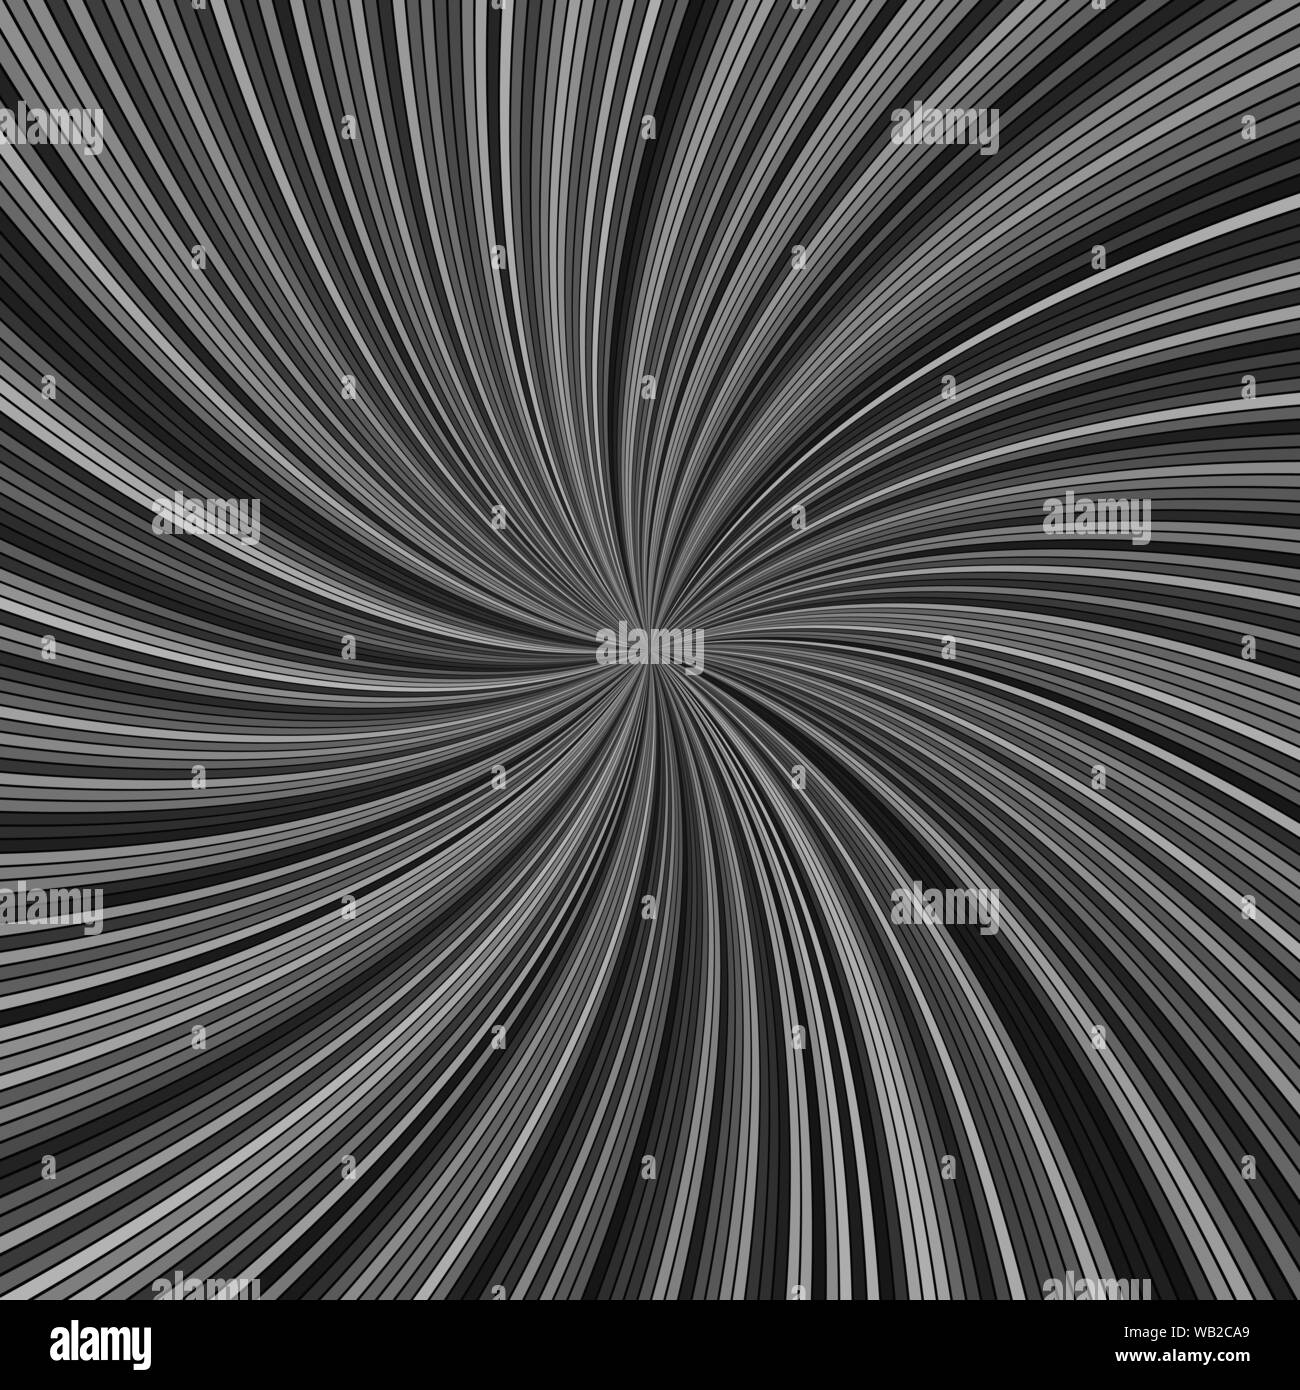 Grau hypnotisch abstrakte Spirale streifen Hintergrund - Vektor gekrümmte burst Design Stock Vektor